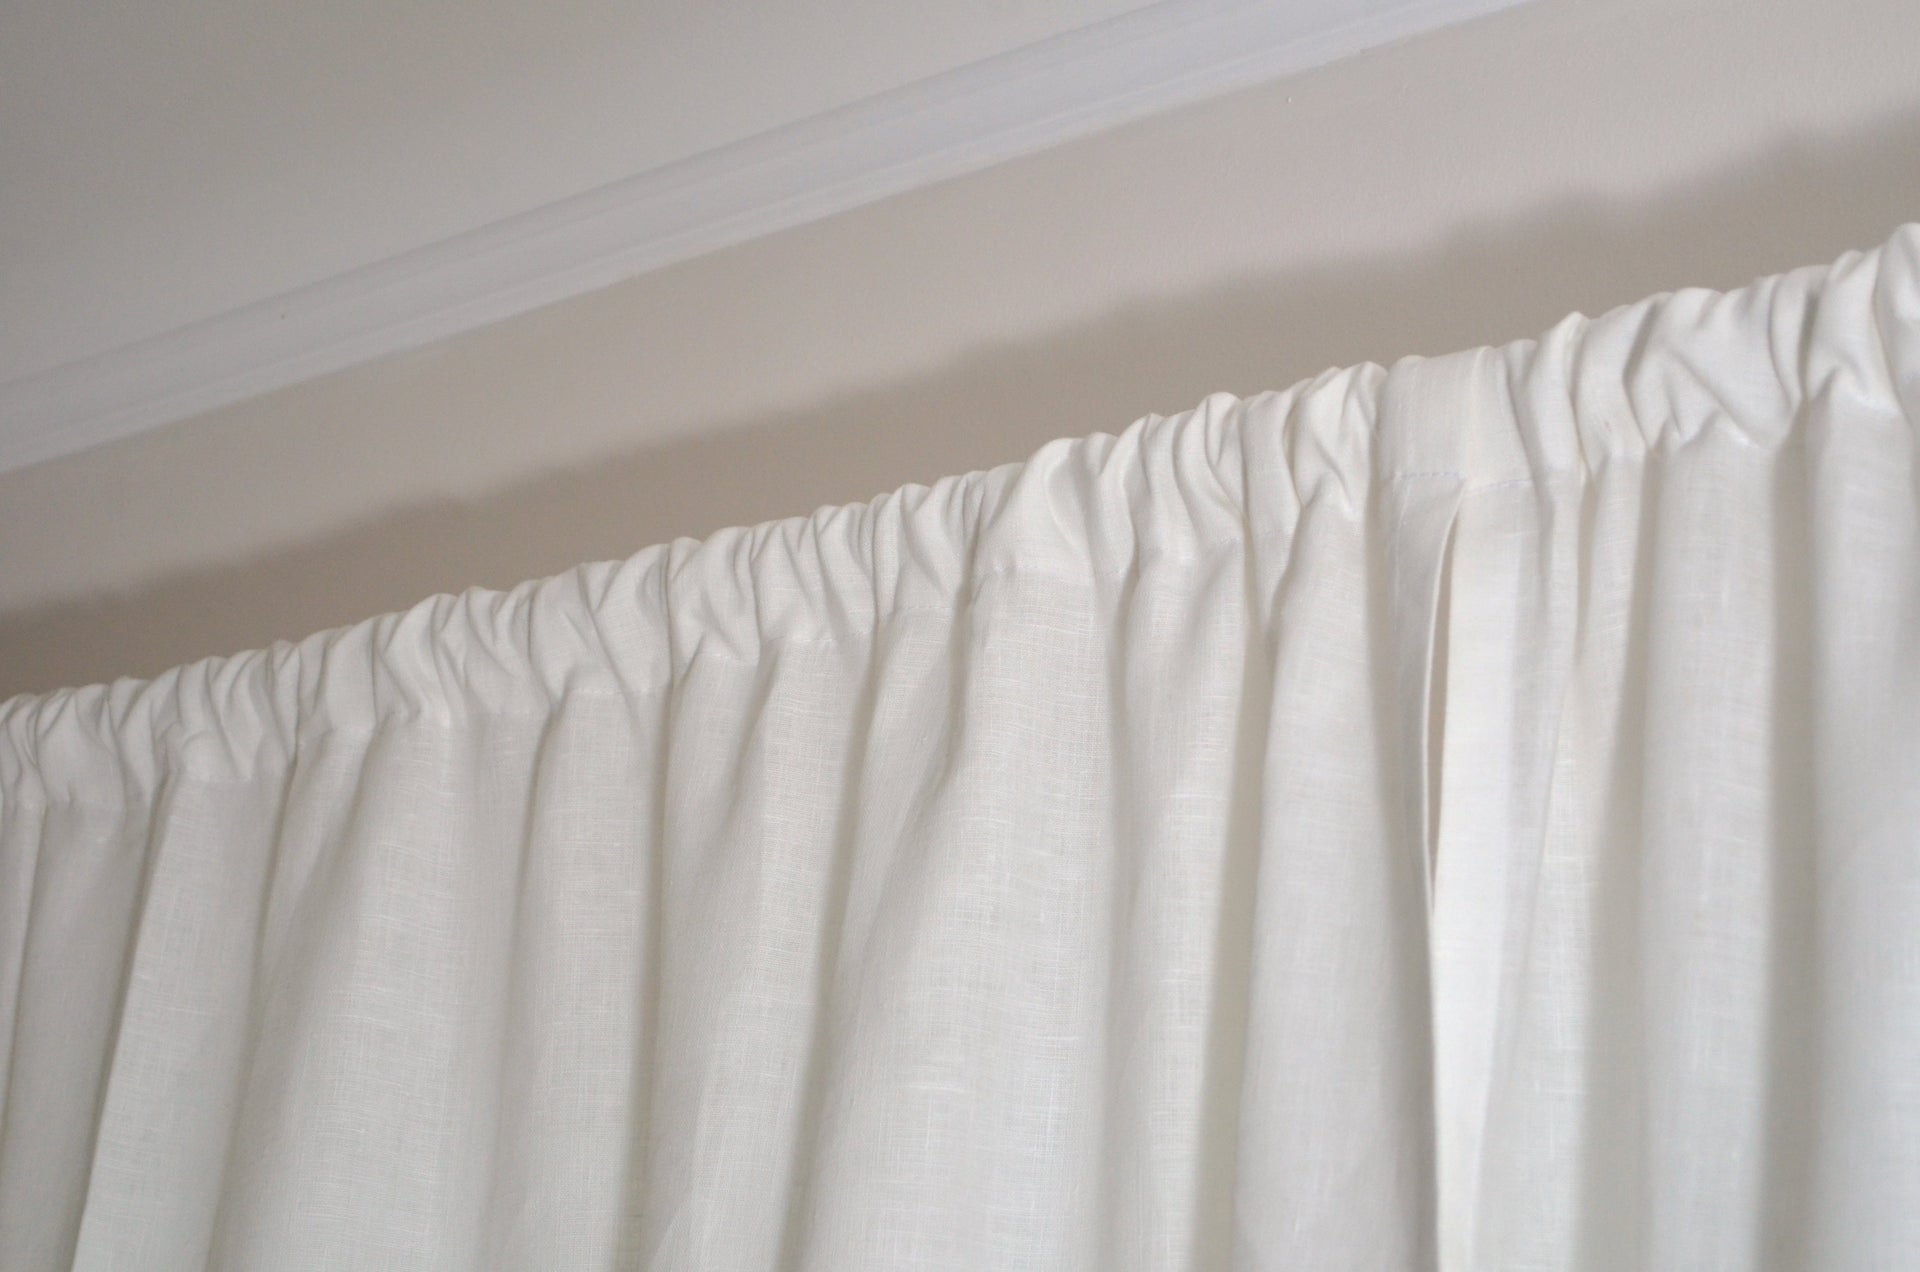 Kitchen Linen Curtain Panel 